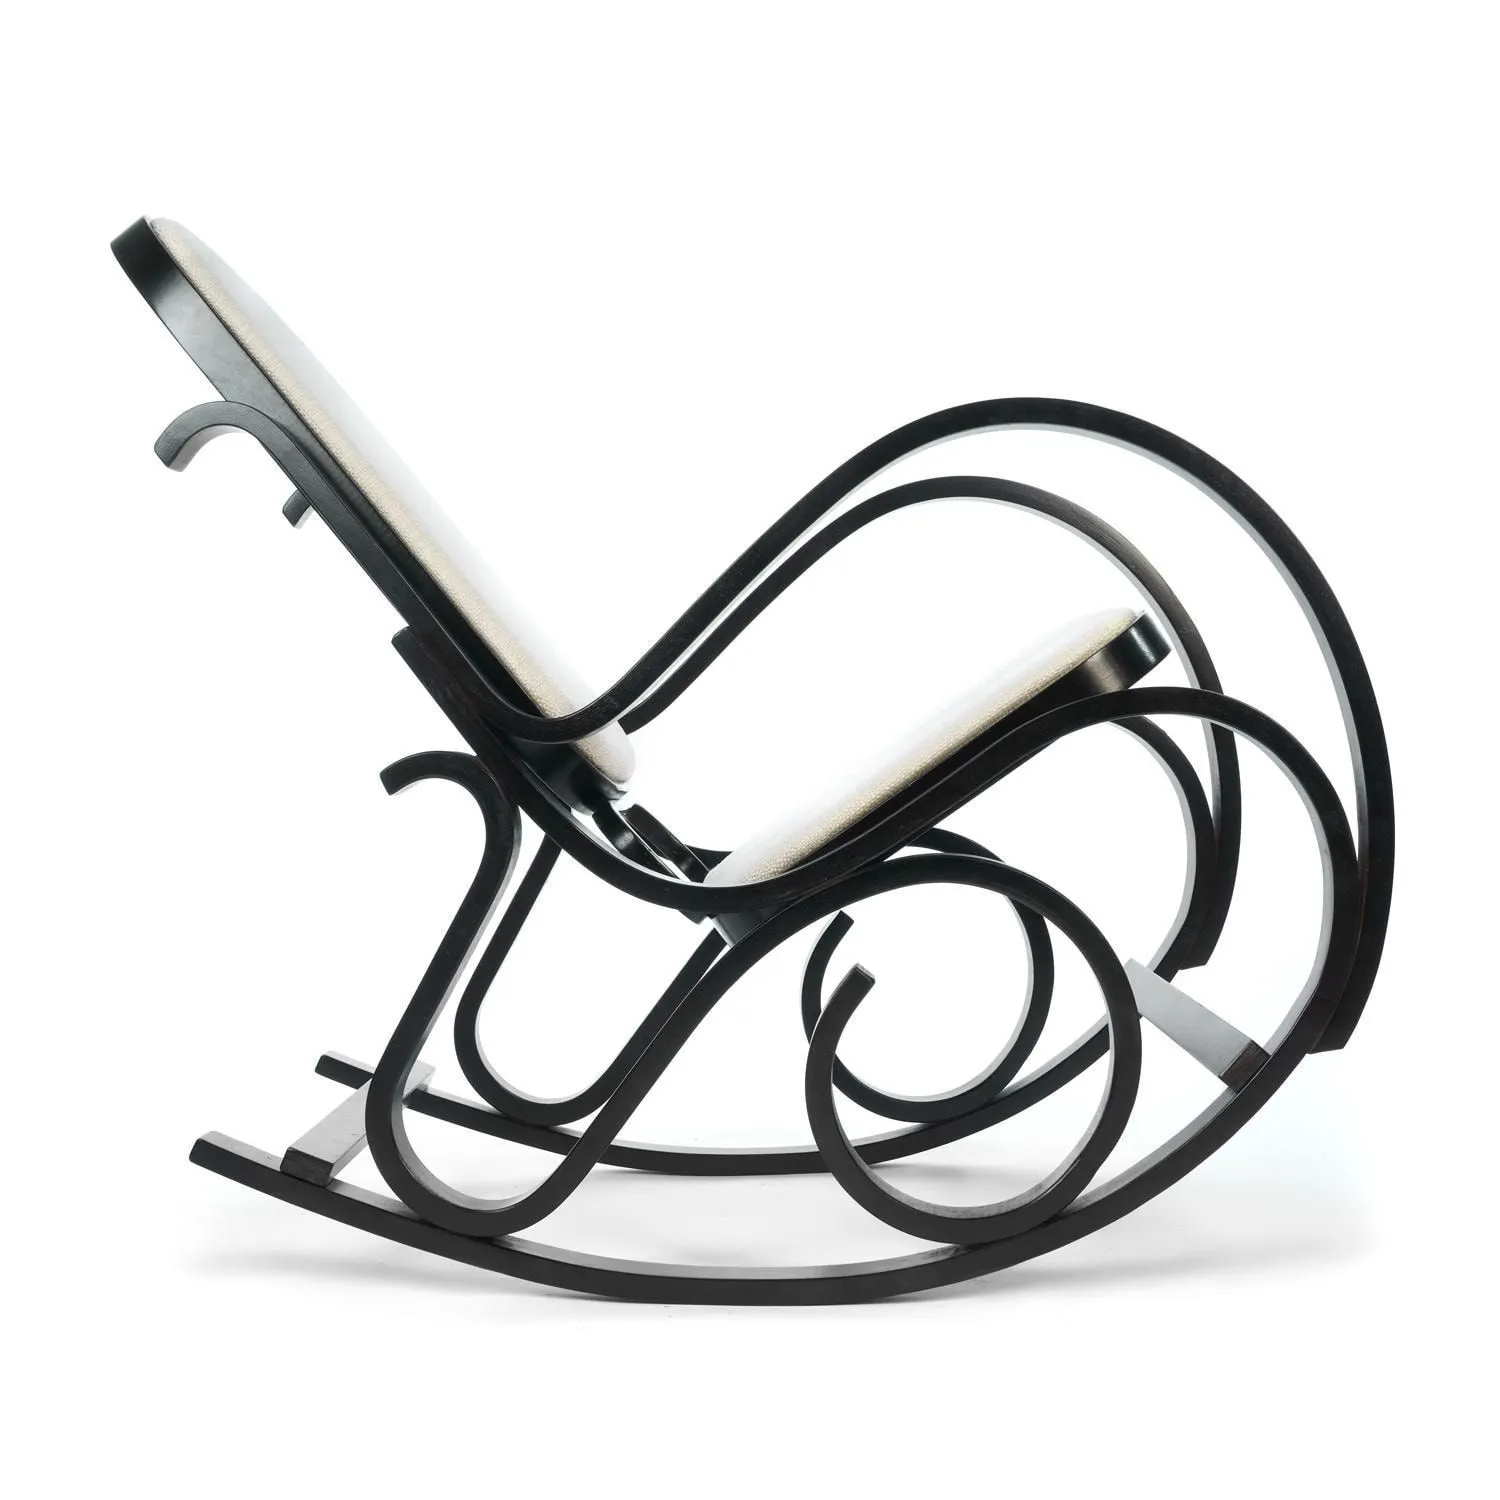 Кресло-качалка mod. AX3002-1 венге